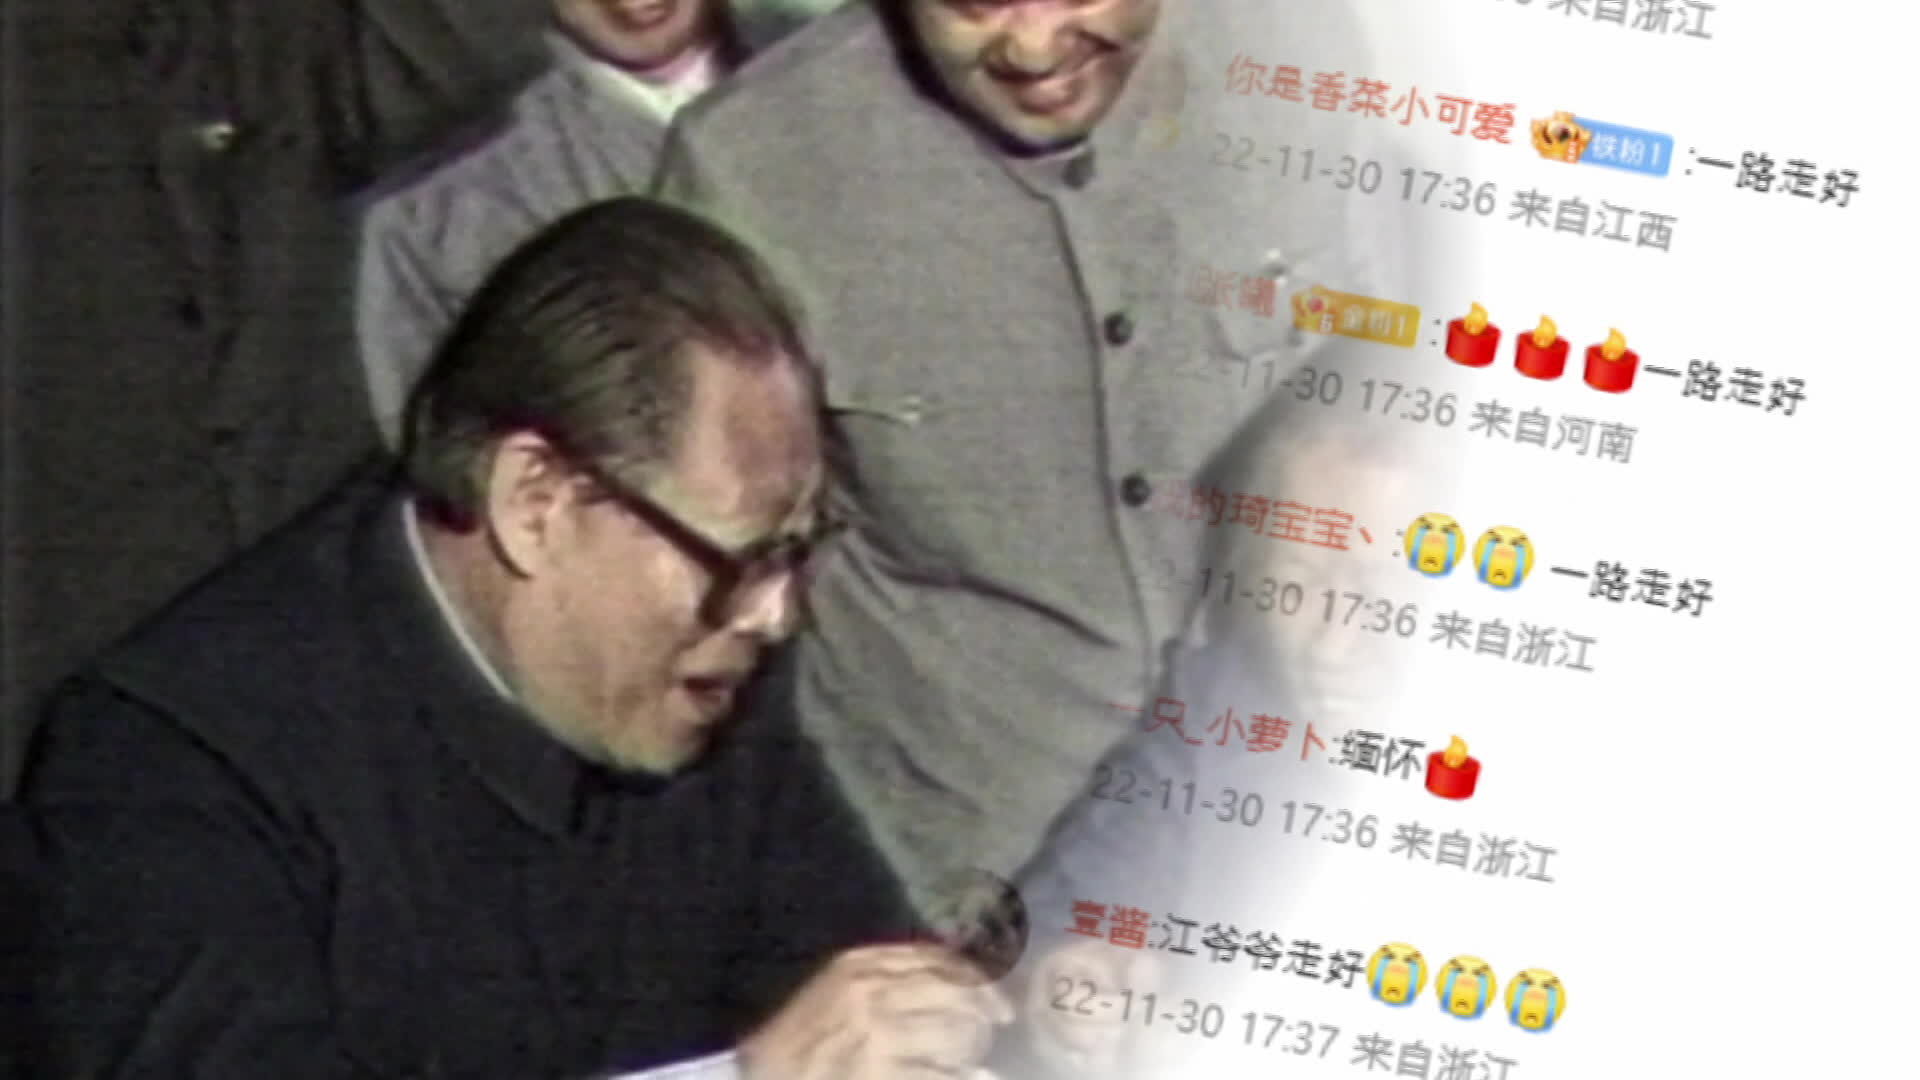 11월 30일 별세한 장쩌민 전 중국 주석에 대한 SNS 추모 댓글이 하루 동안 백만 건을 넘겼다. 장 전 주석 사망 소식은 ‘백지 시위’ 직후 발표됐다. 중국 당국의 방역 완화 조치도 잇달아 나왔다. (사진: KBS 뉴스9)